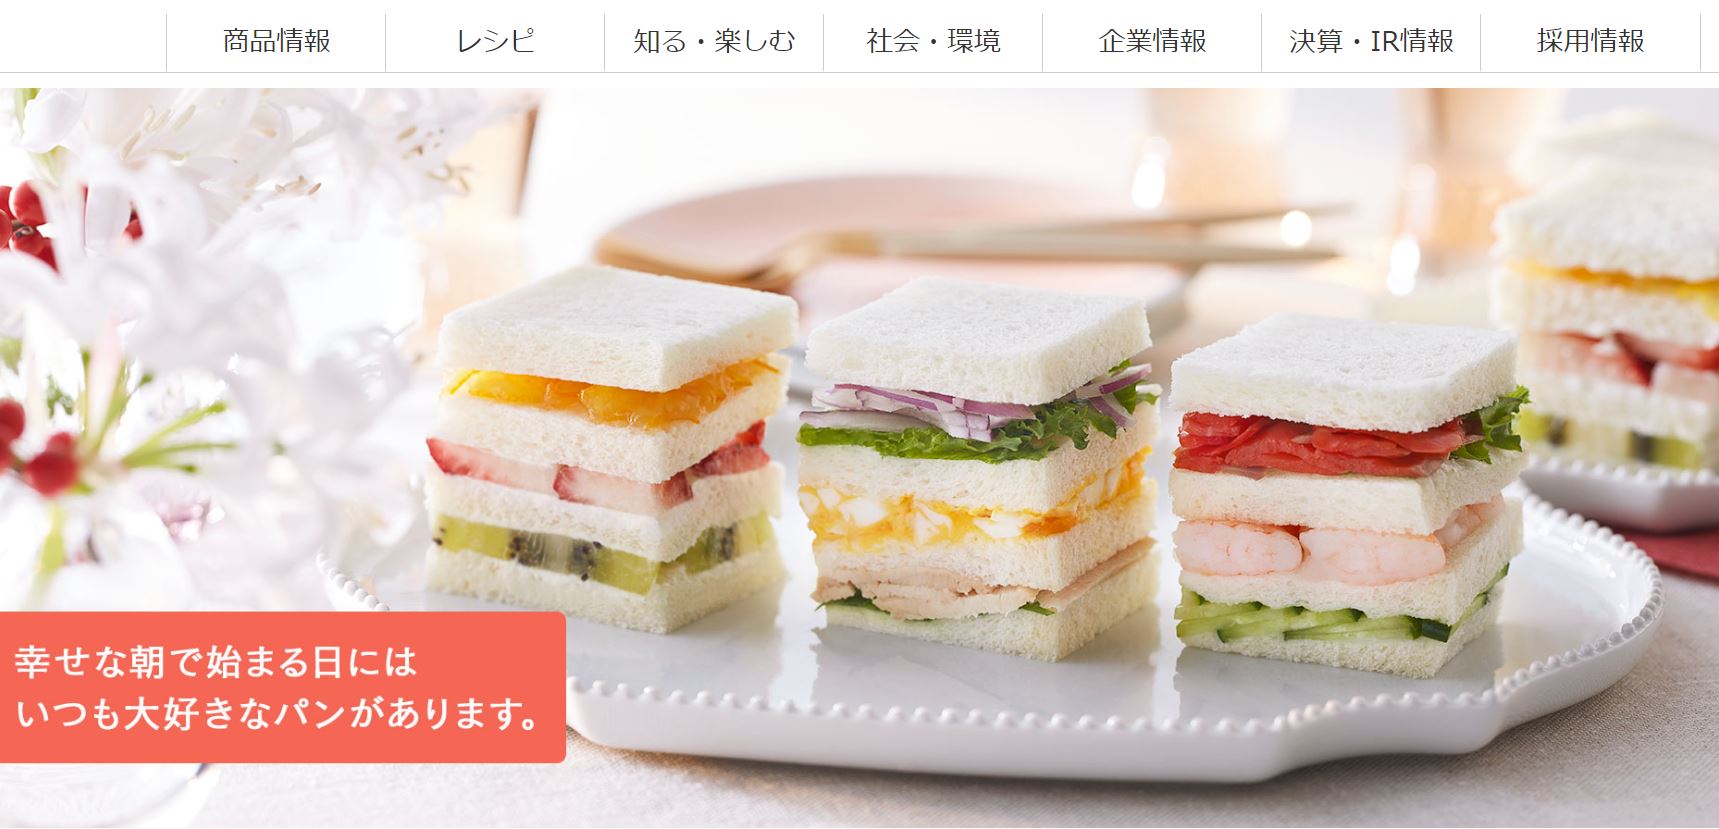 山崎製パン公式サイトの画像